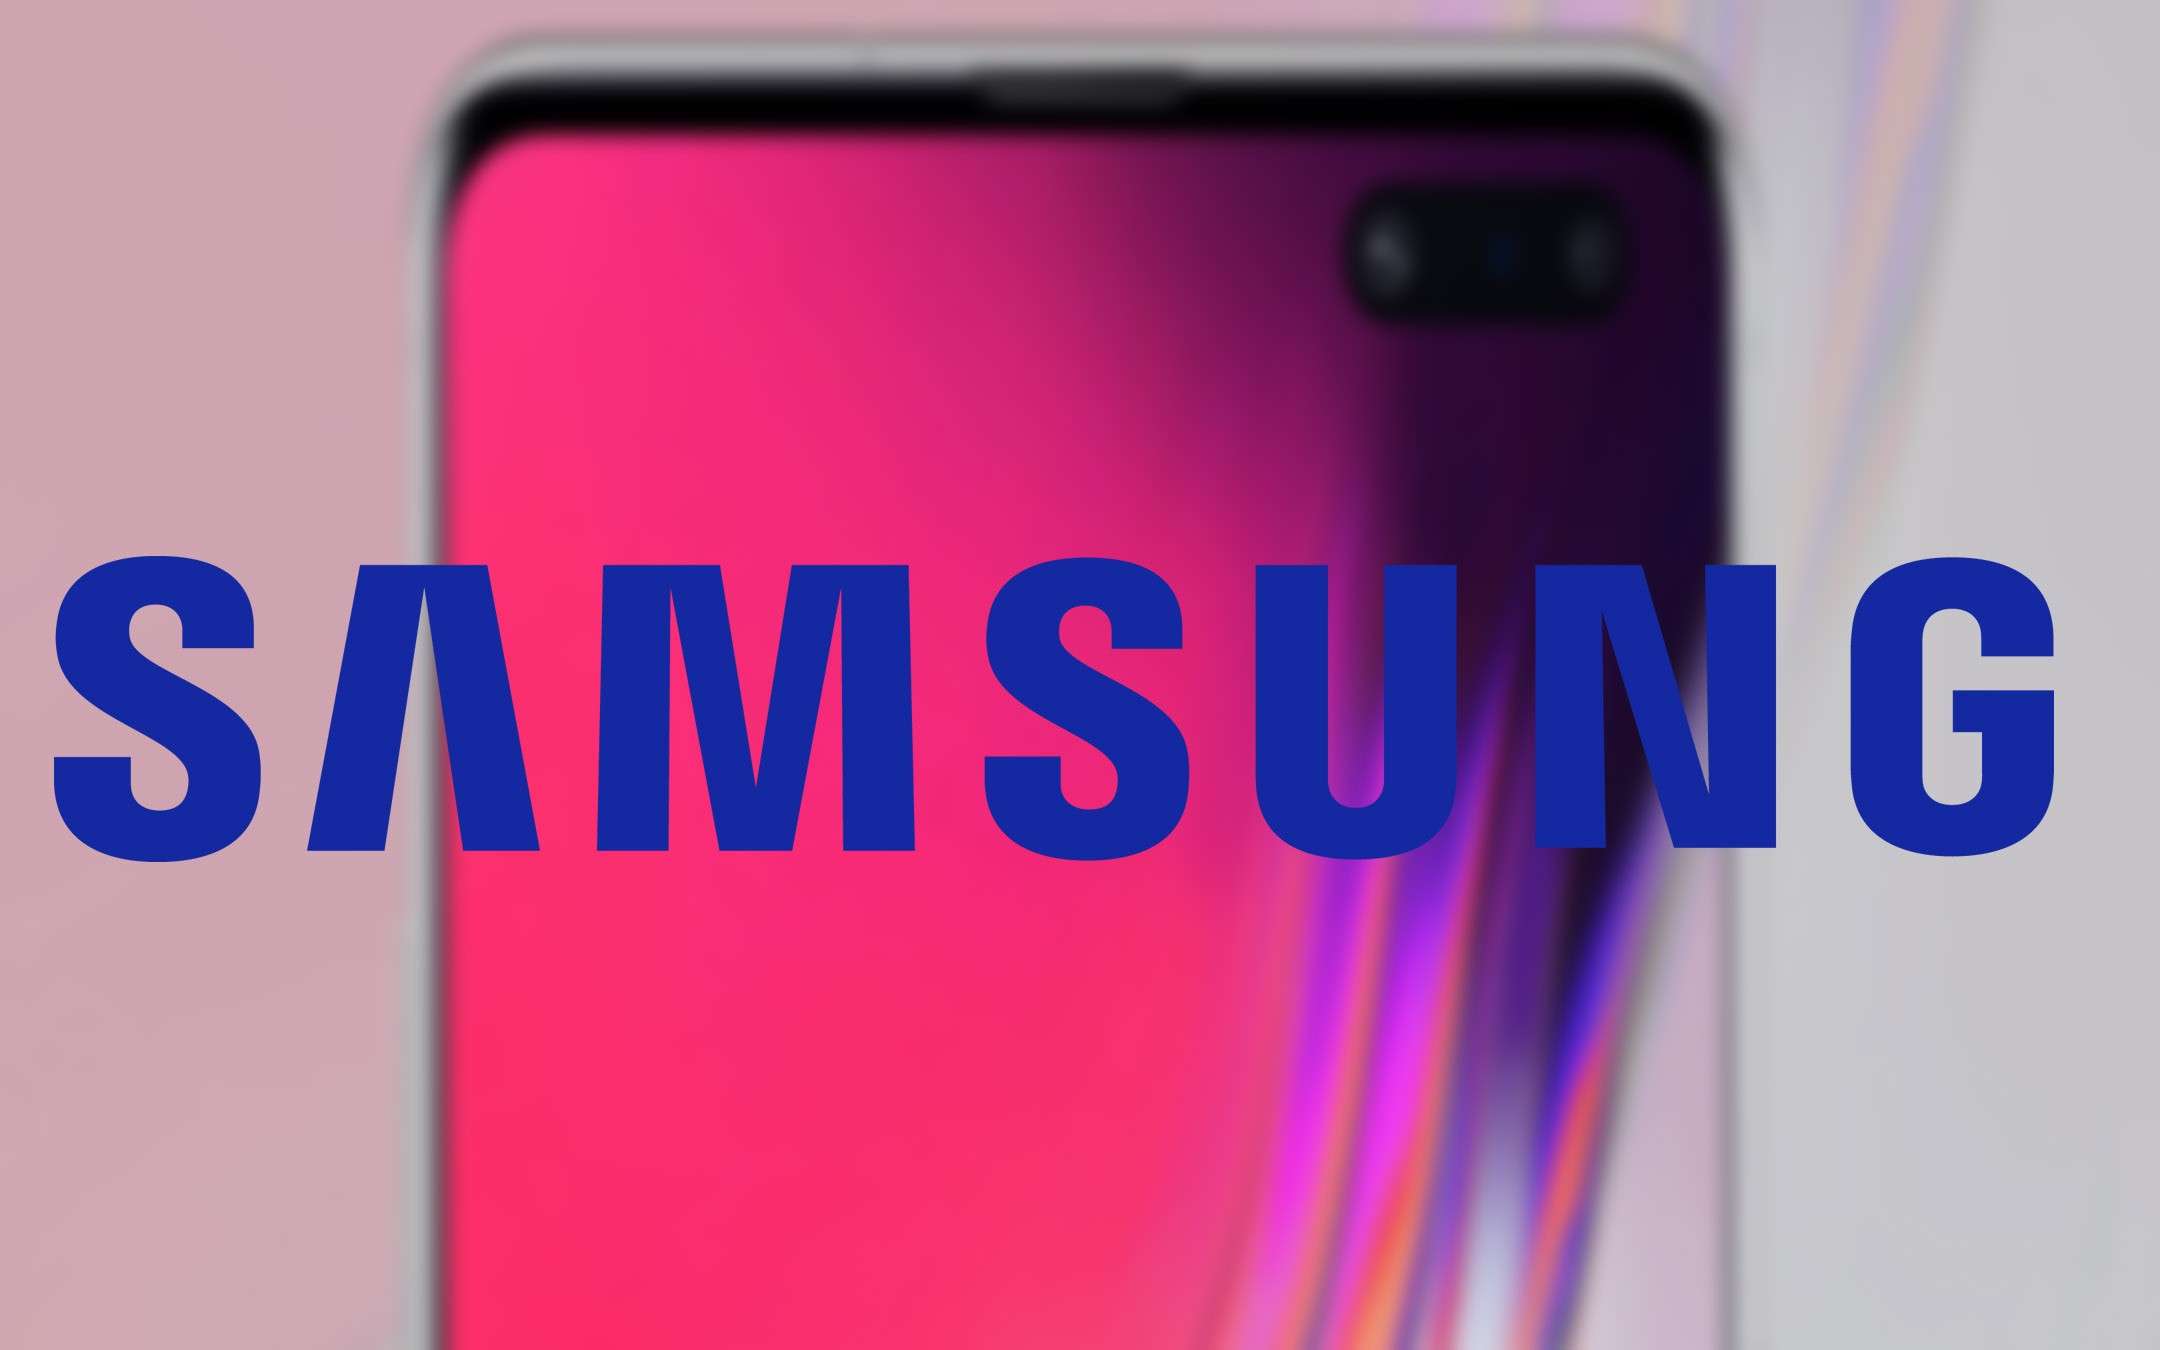 Samsung Galaxy S10 non si ripara facilmente